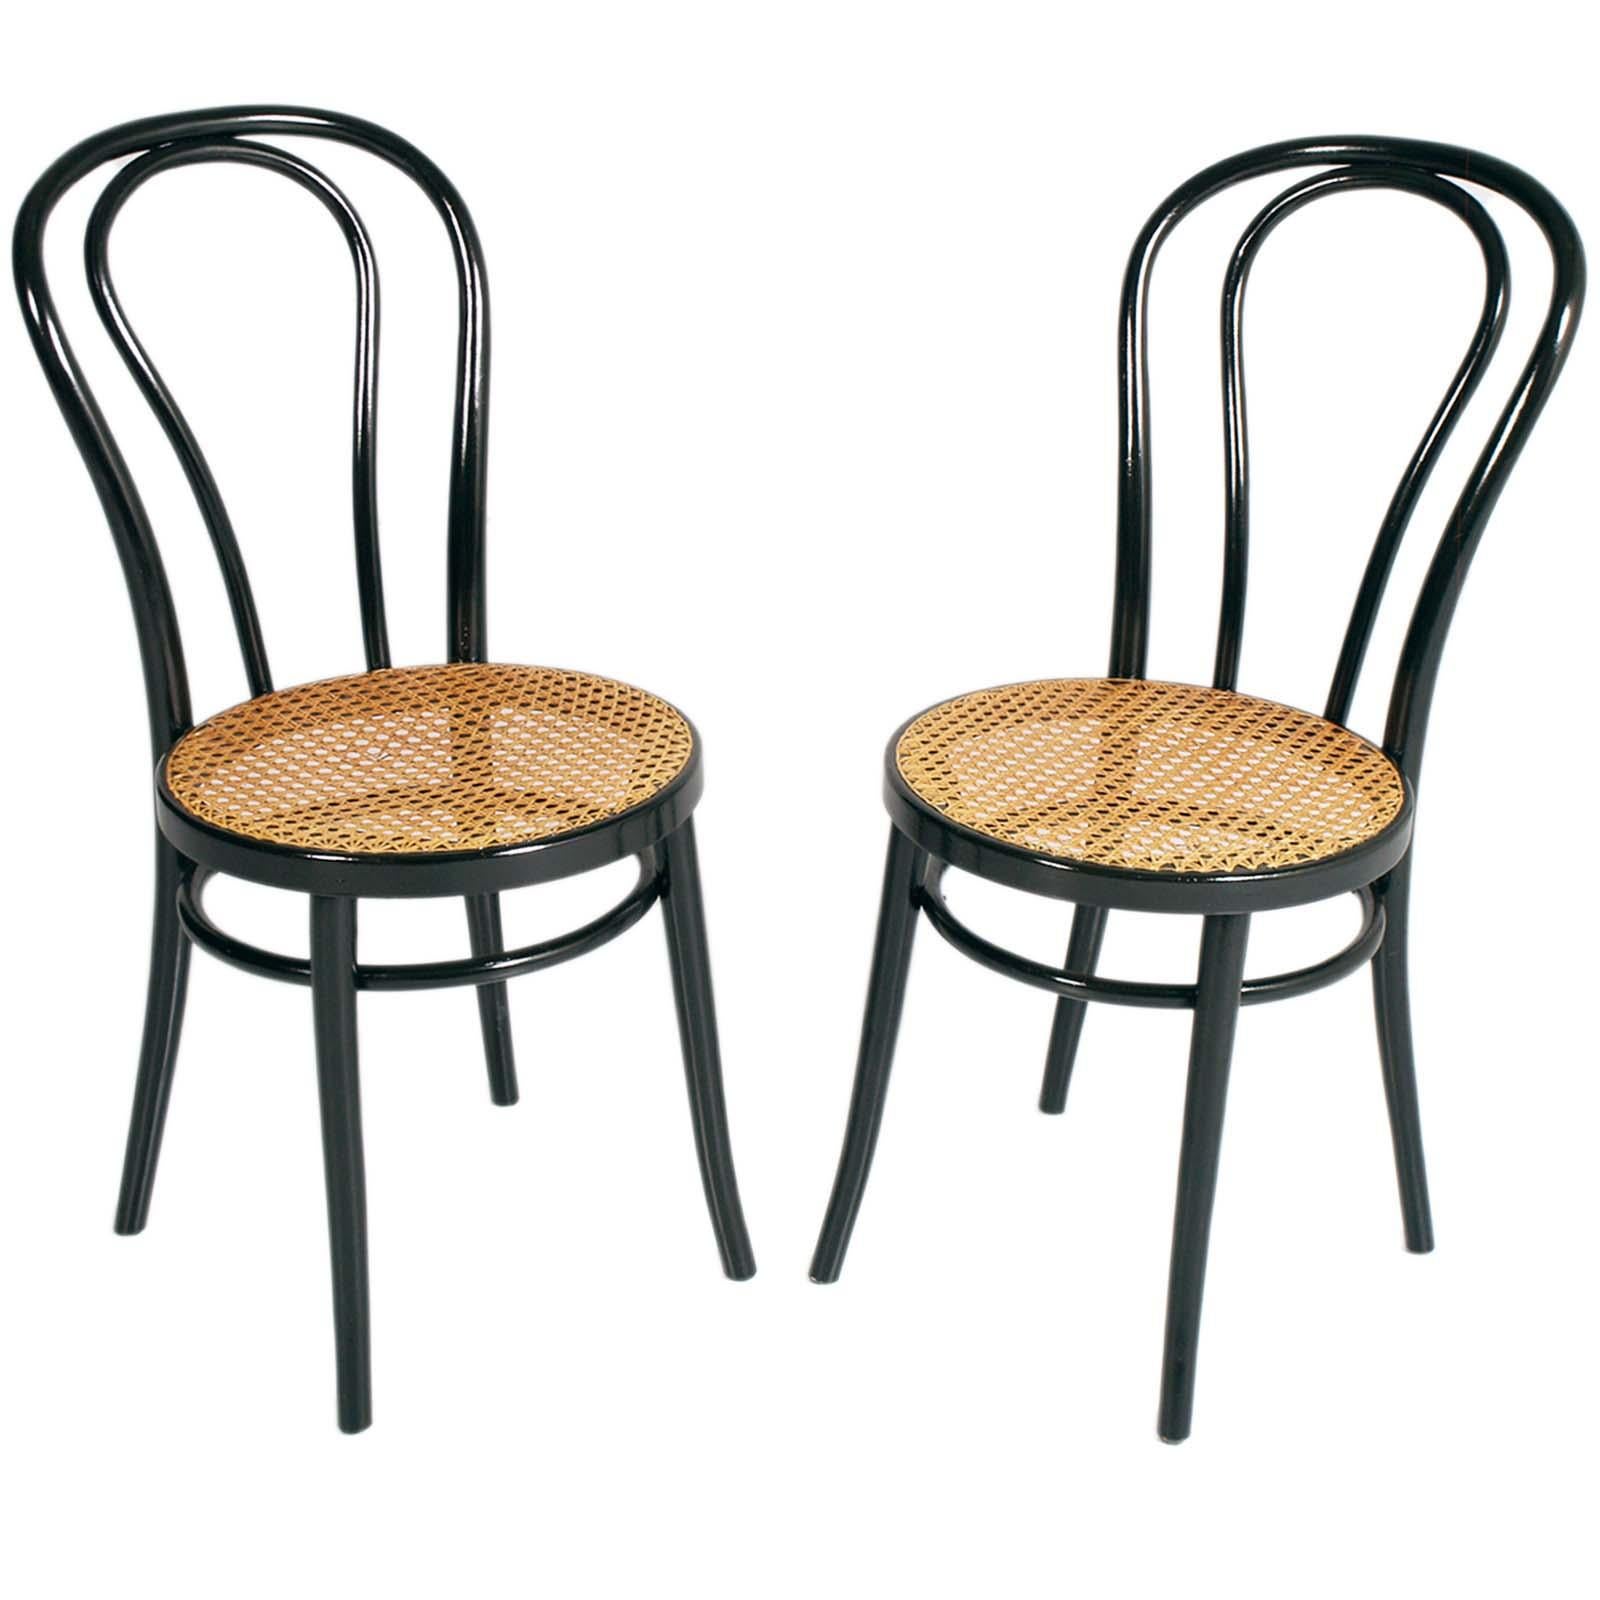 Stabile Original Thonet Stühle aus den 1960er Jahren in gebogener Buche mit Wiener Strohsitz. Romantisch und edel für Ihre Küche.